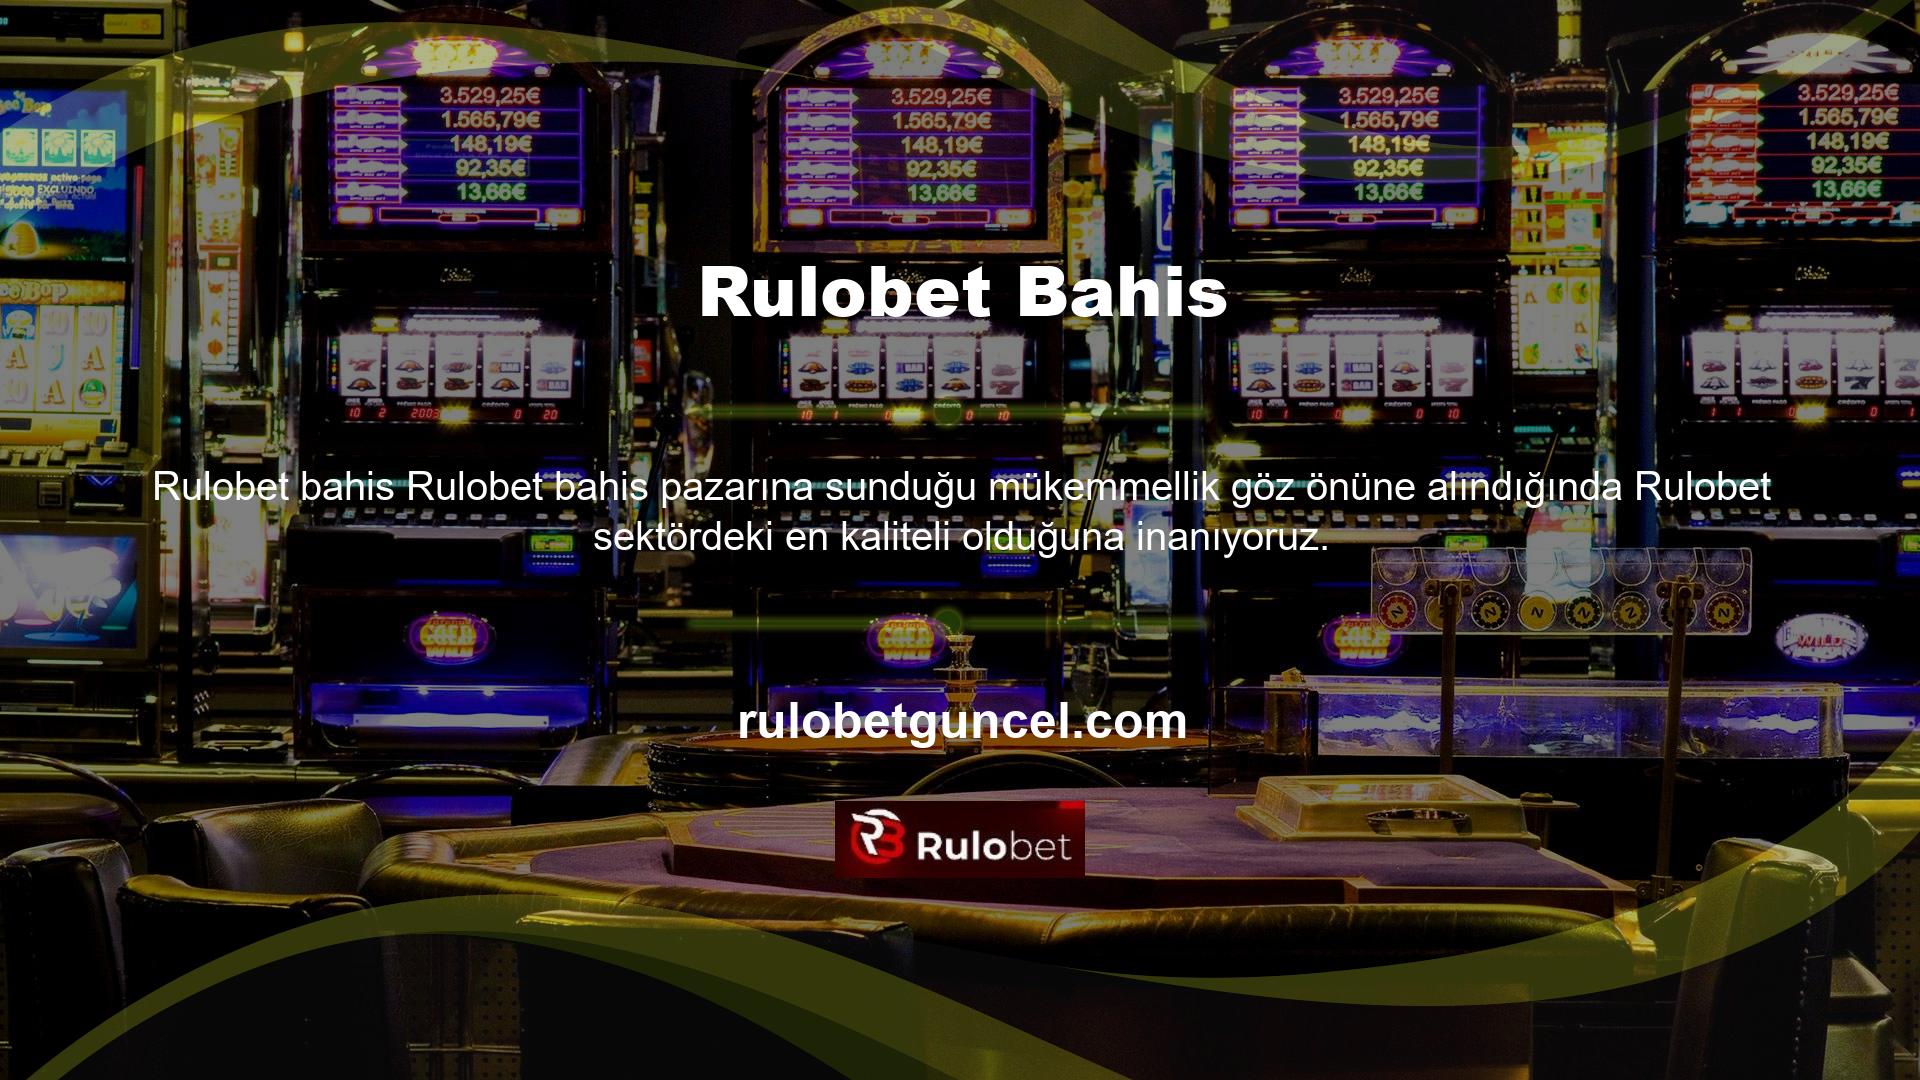 Bazı web siteleri zamanla Rulobet web sitesini taklit etme eğilimindedir